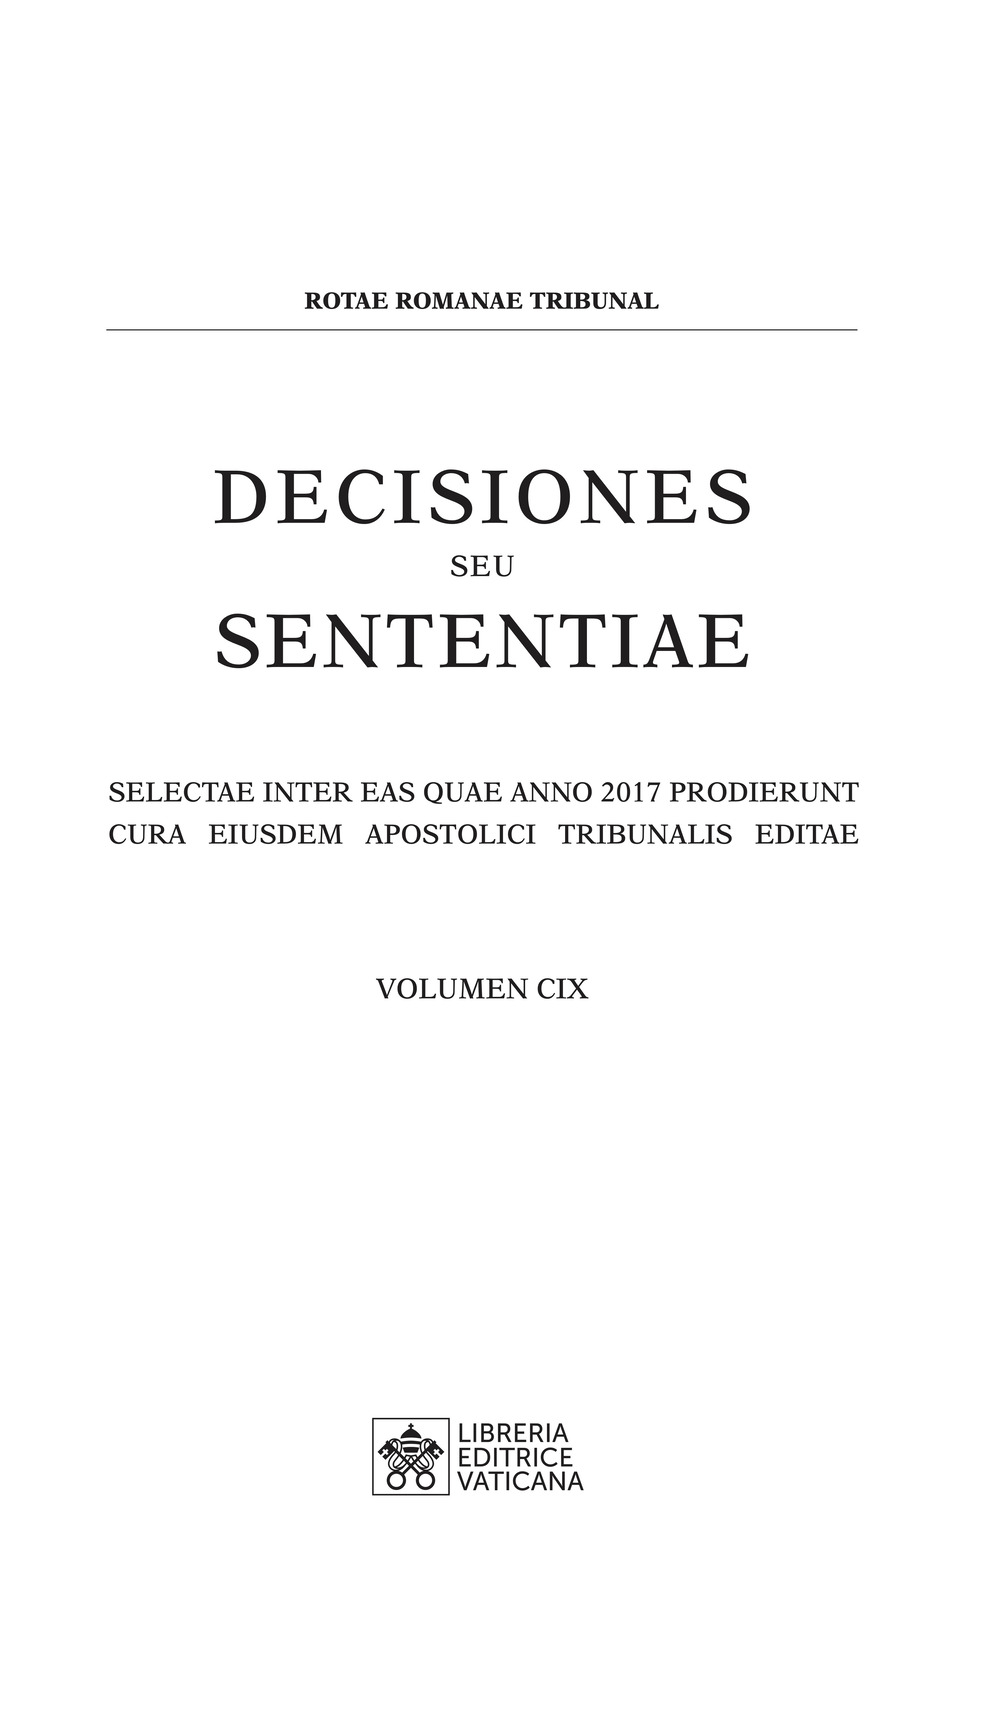 Decisiones seu sententiae. Selectae inter eas quae anno 2017 prodierunt cura eiusdem Apostolici tribunalis editae. Vol. 109